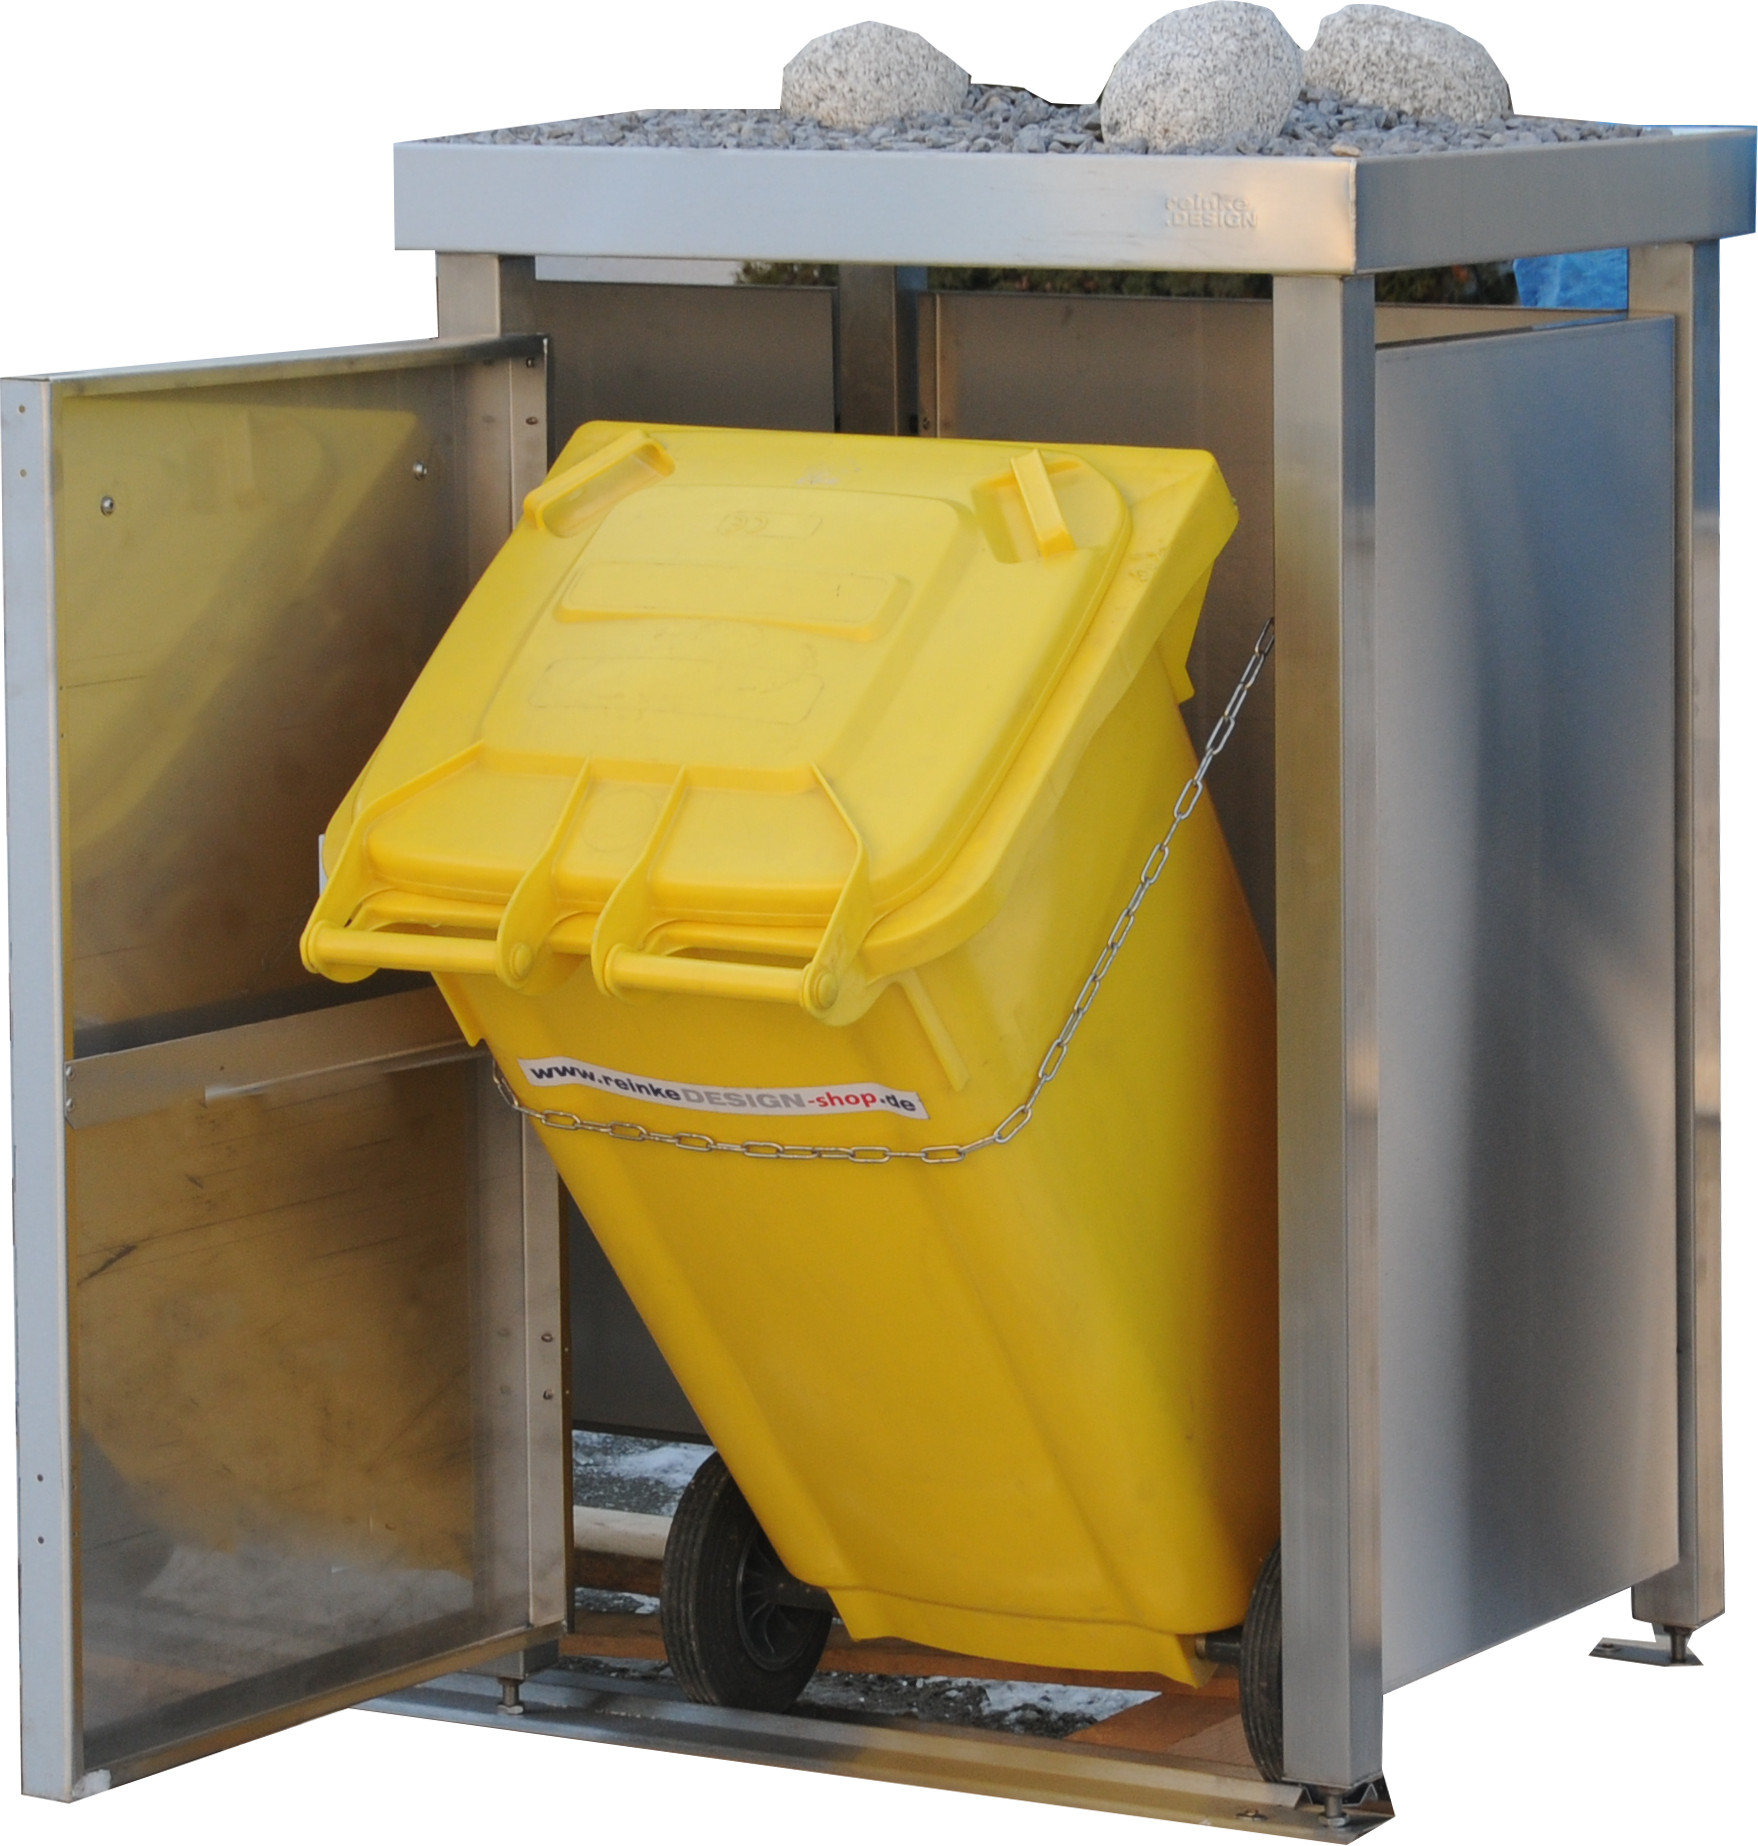 Müllbox Typ-LW, 2x 240l + 2x 120l, Türfarbe Anthrazit